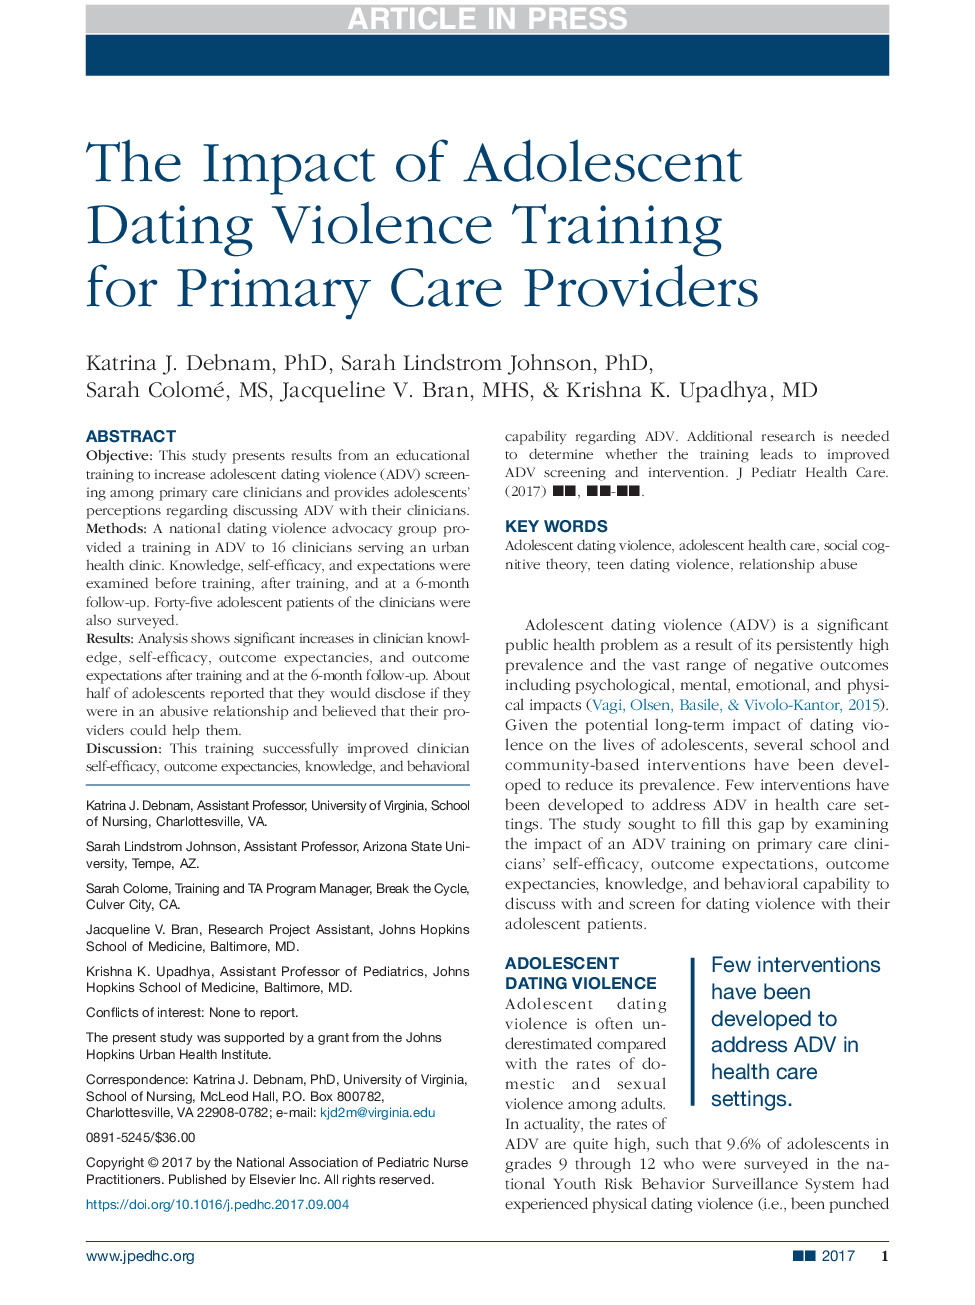 تأثیر آموزش نوجوانان در مورد خشونت برای تامین کنندگان مراقبت های اولیه 